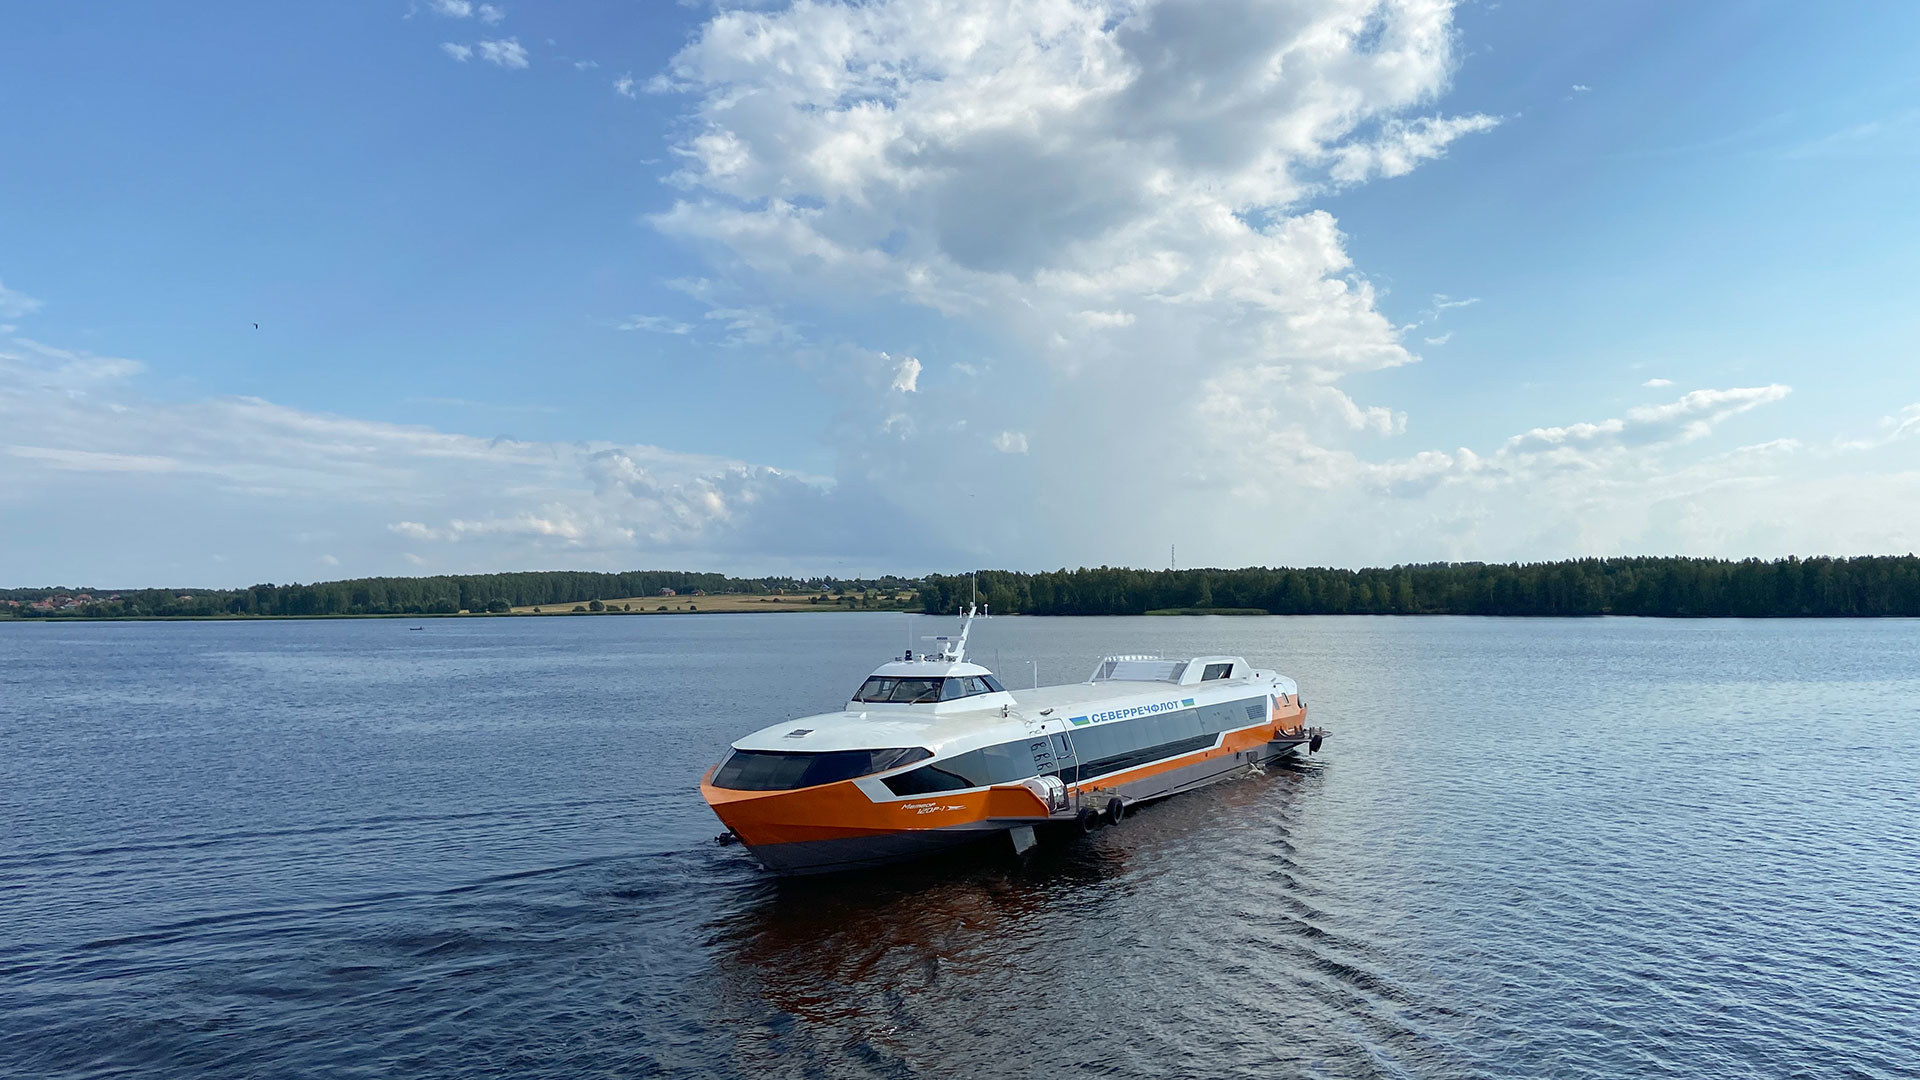 Русија, Нижегородска област, 3.08.2021. Свечано спуштање на воду брода са подводним крилима  „Метеор 120Р“ (брзи путнички брод дизајниран за превоз 120 људи на удаљености до 600 км).